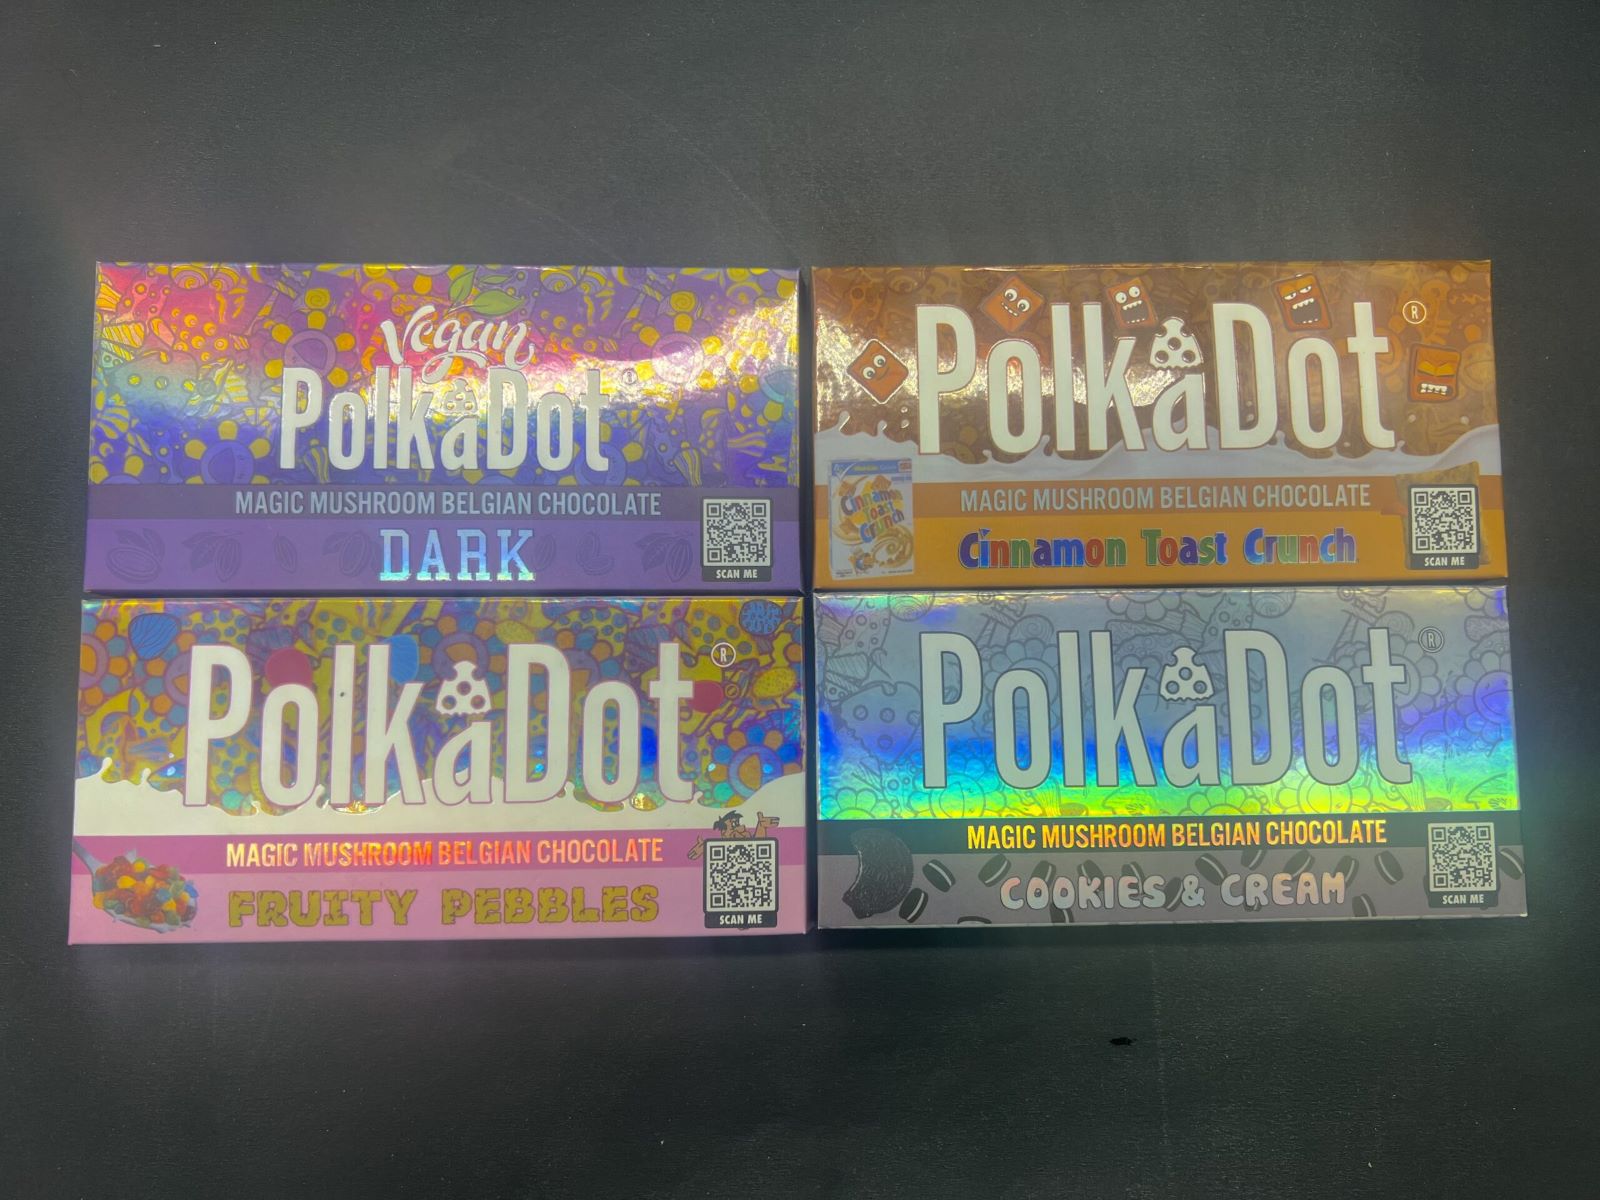 Introducing The Irresistible Polkadot Chocolate Bar!